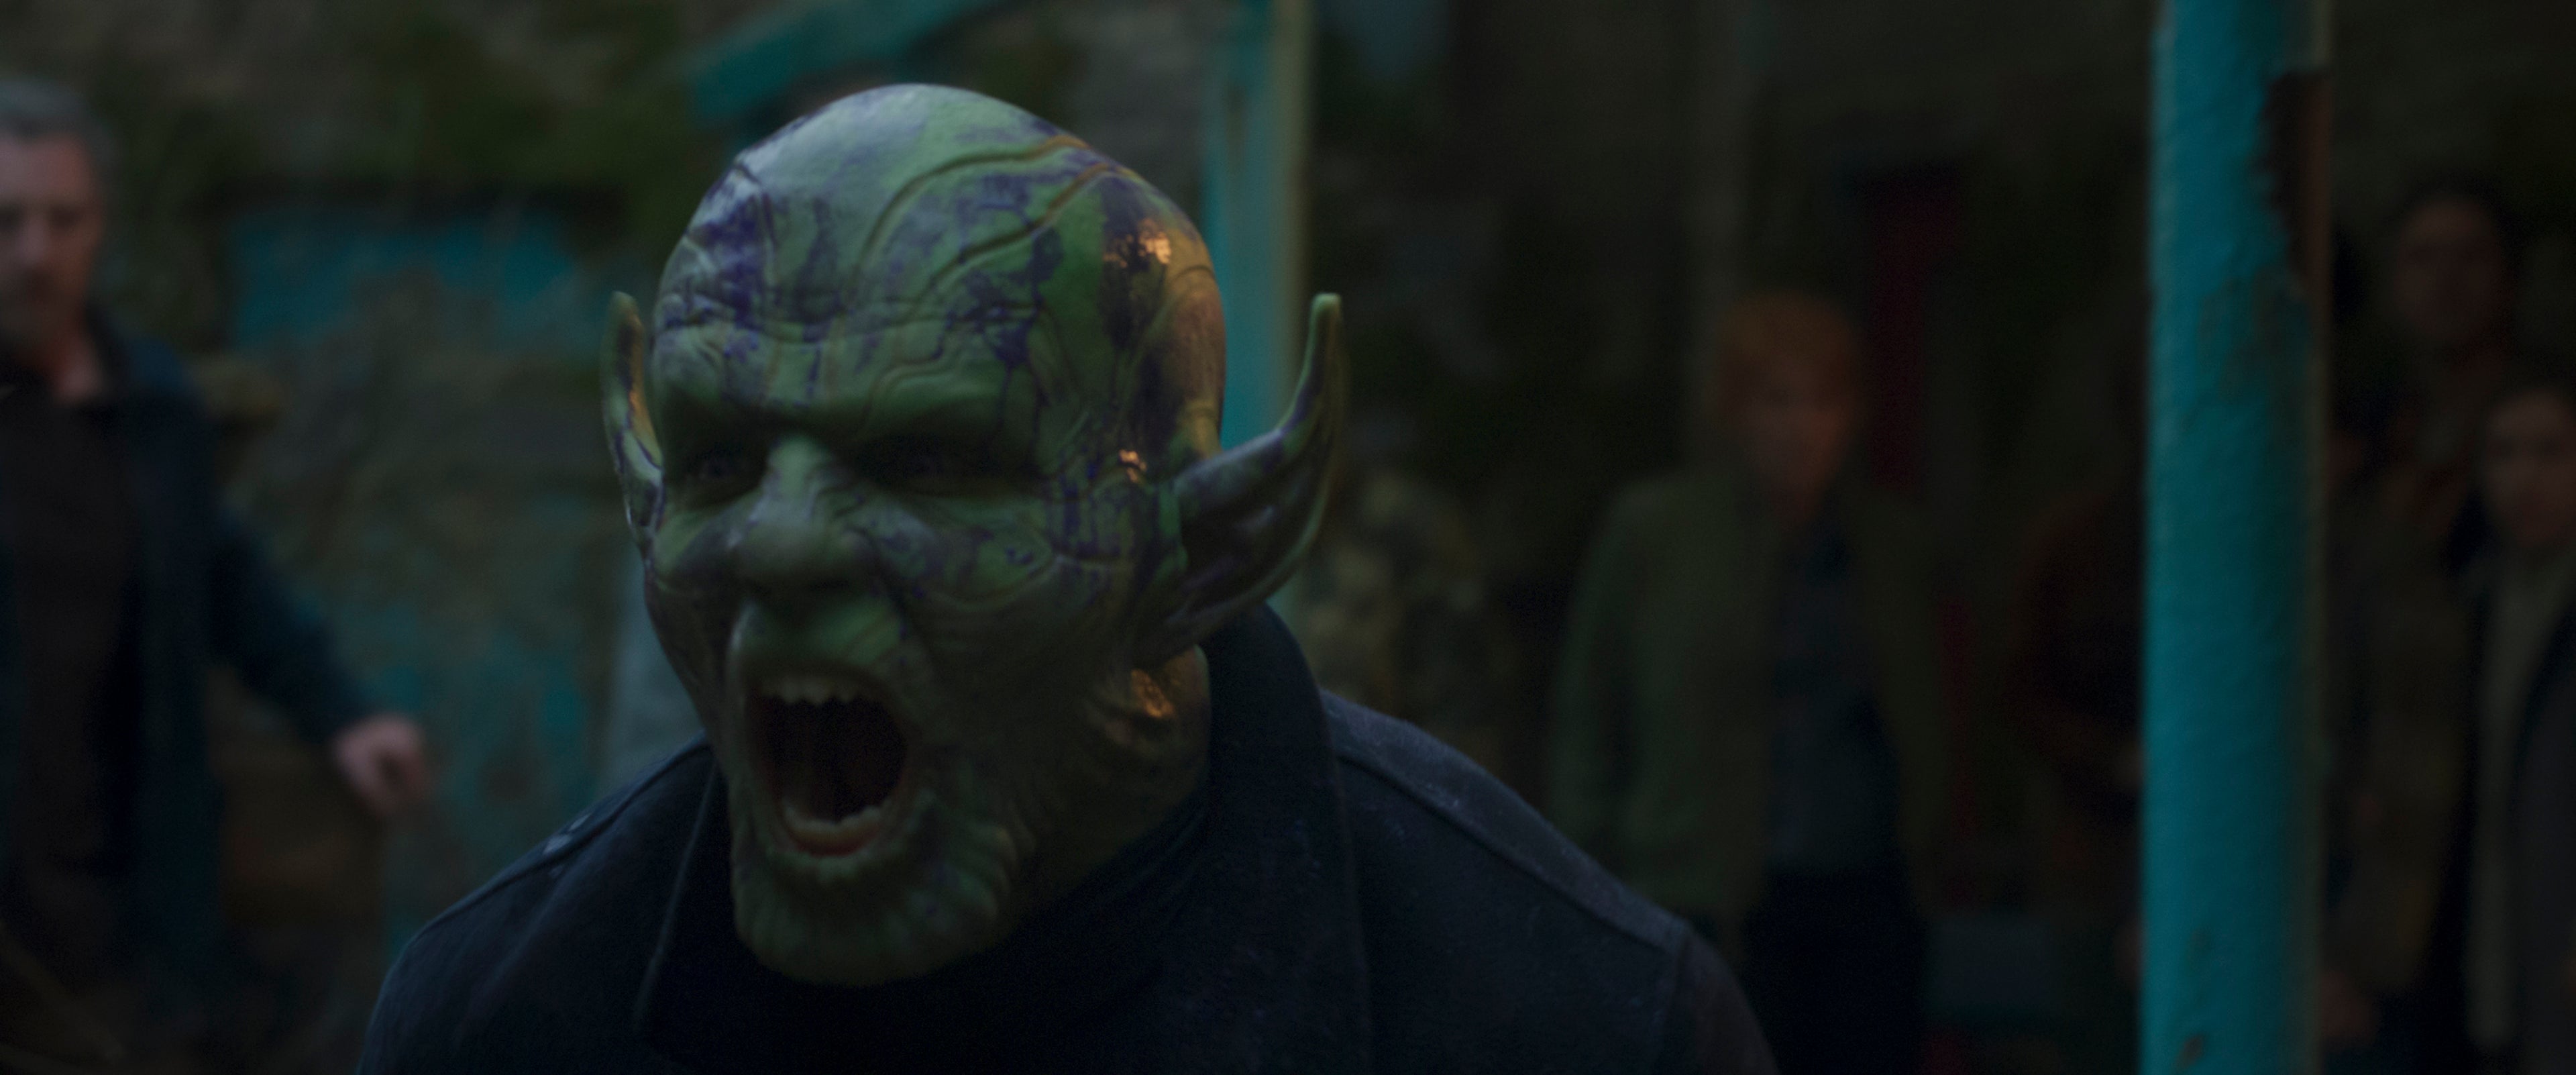 Still image of a Skrull shouting